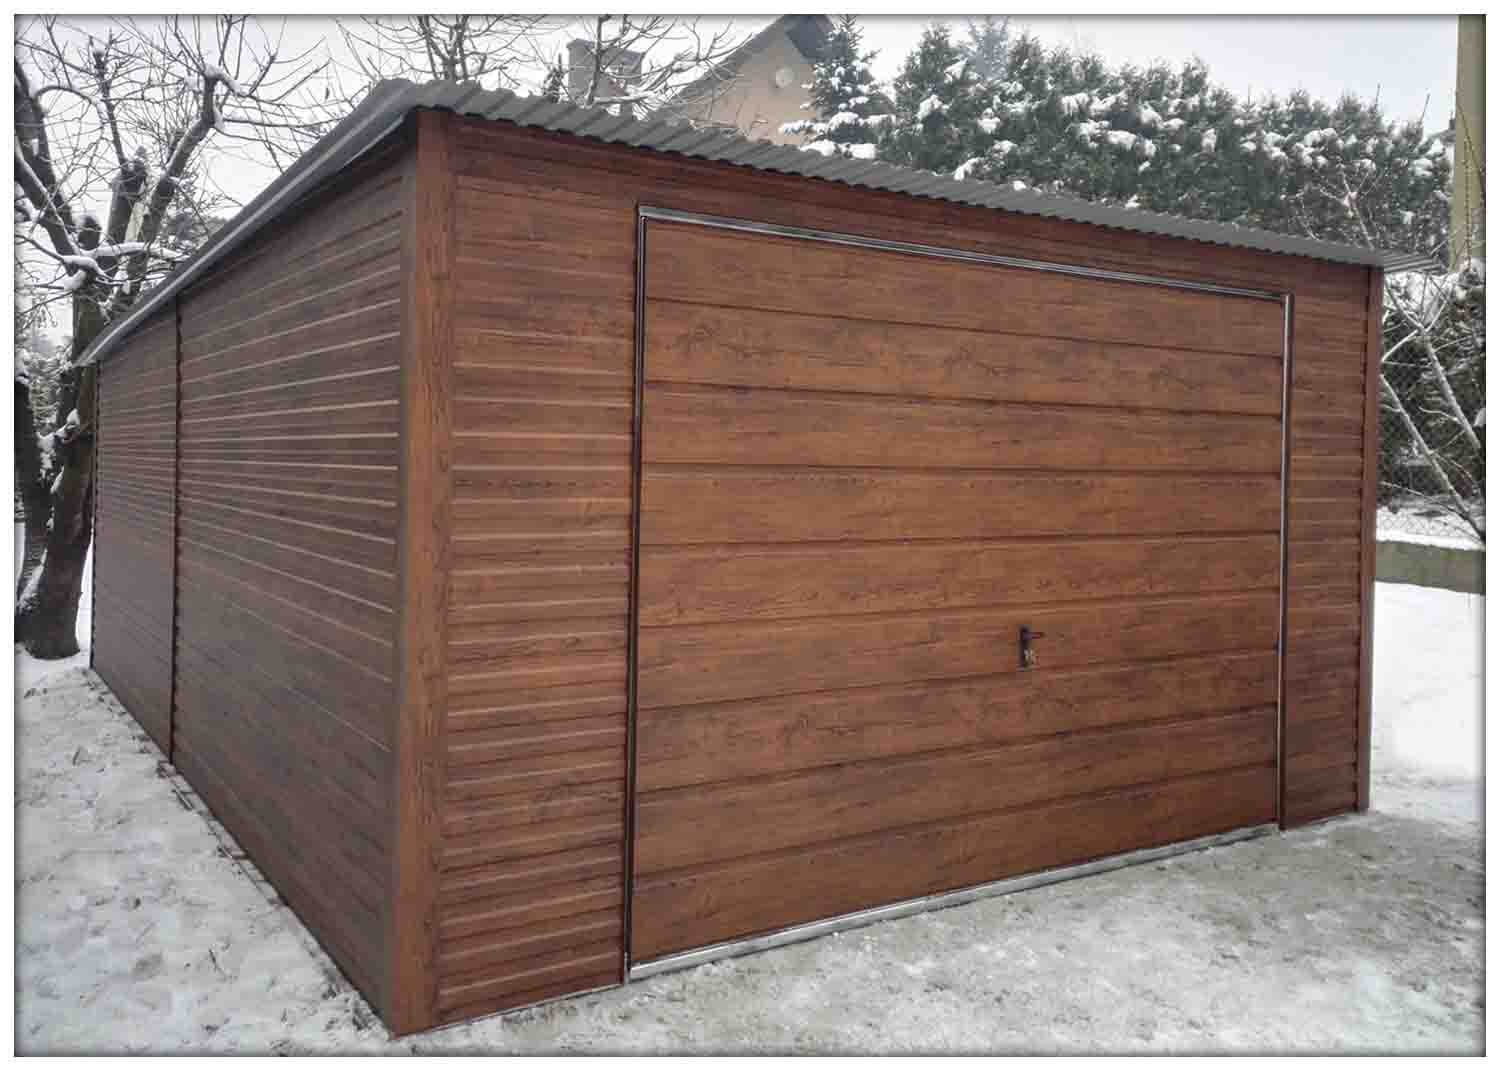 Plechová garáž 4x6 m - zadní spád - matný ořech